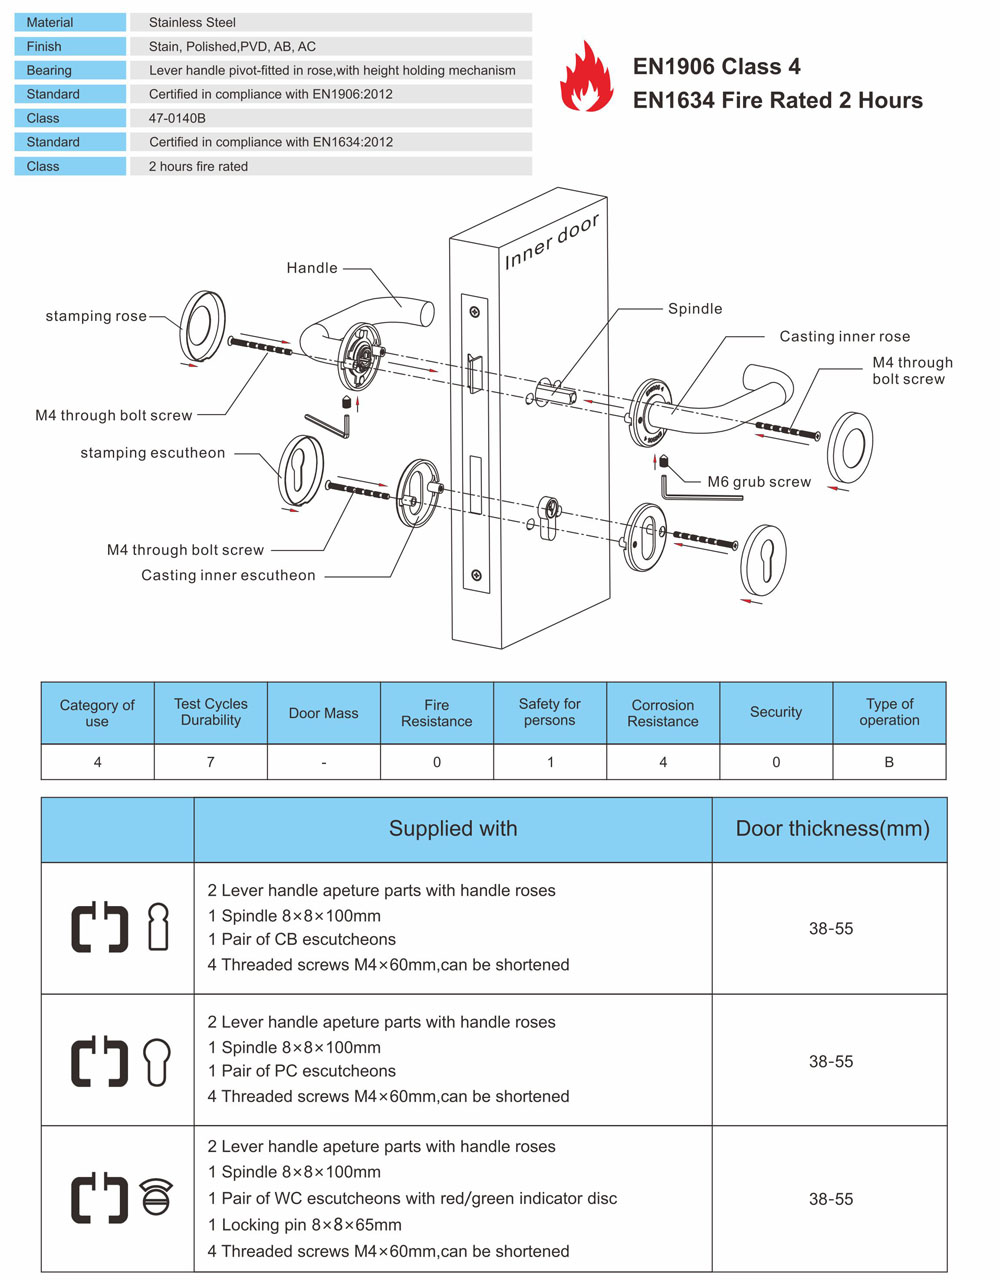 SUS304 Modern Casting Lever Internal Door Handle for Hollow Metal Doors -DDSH029